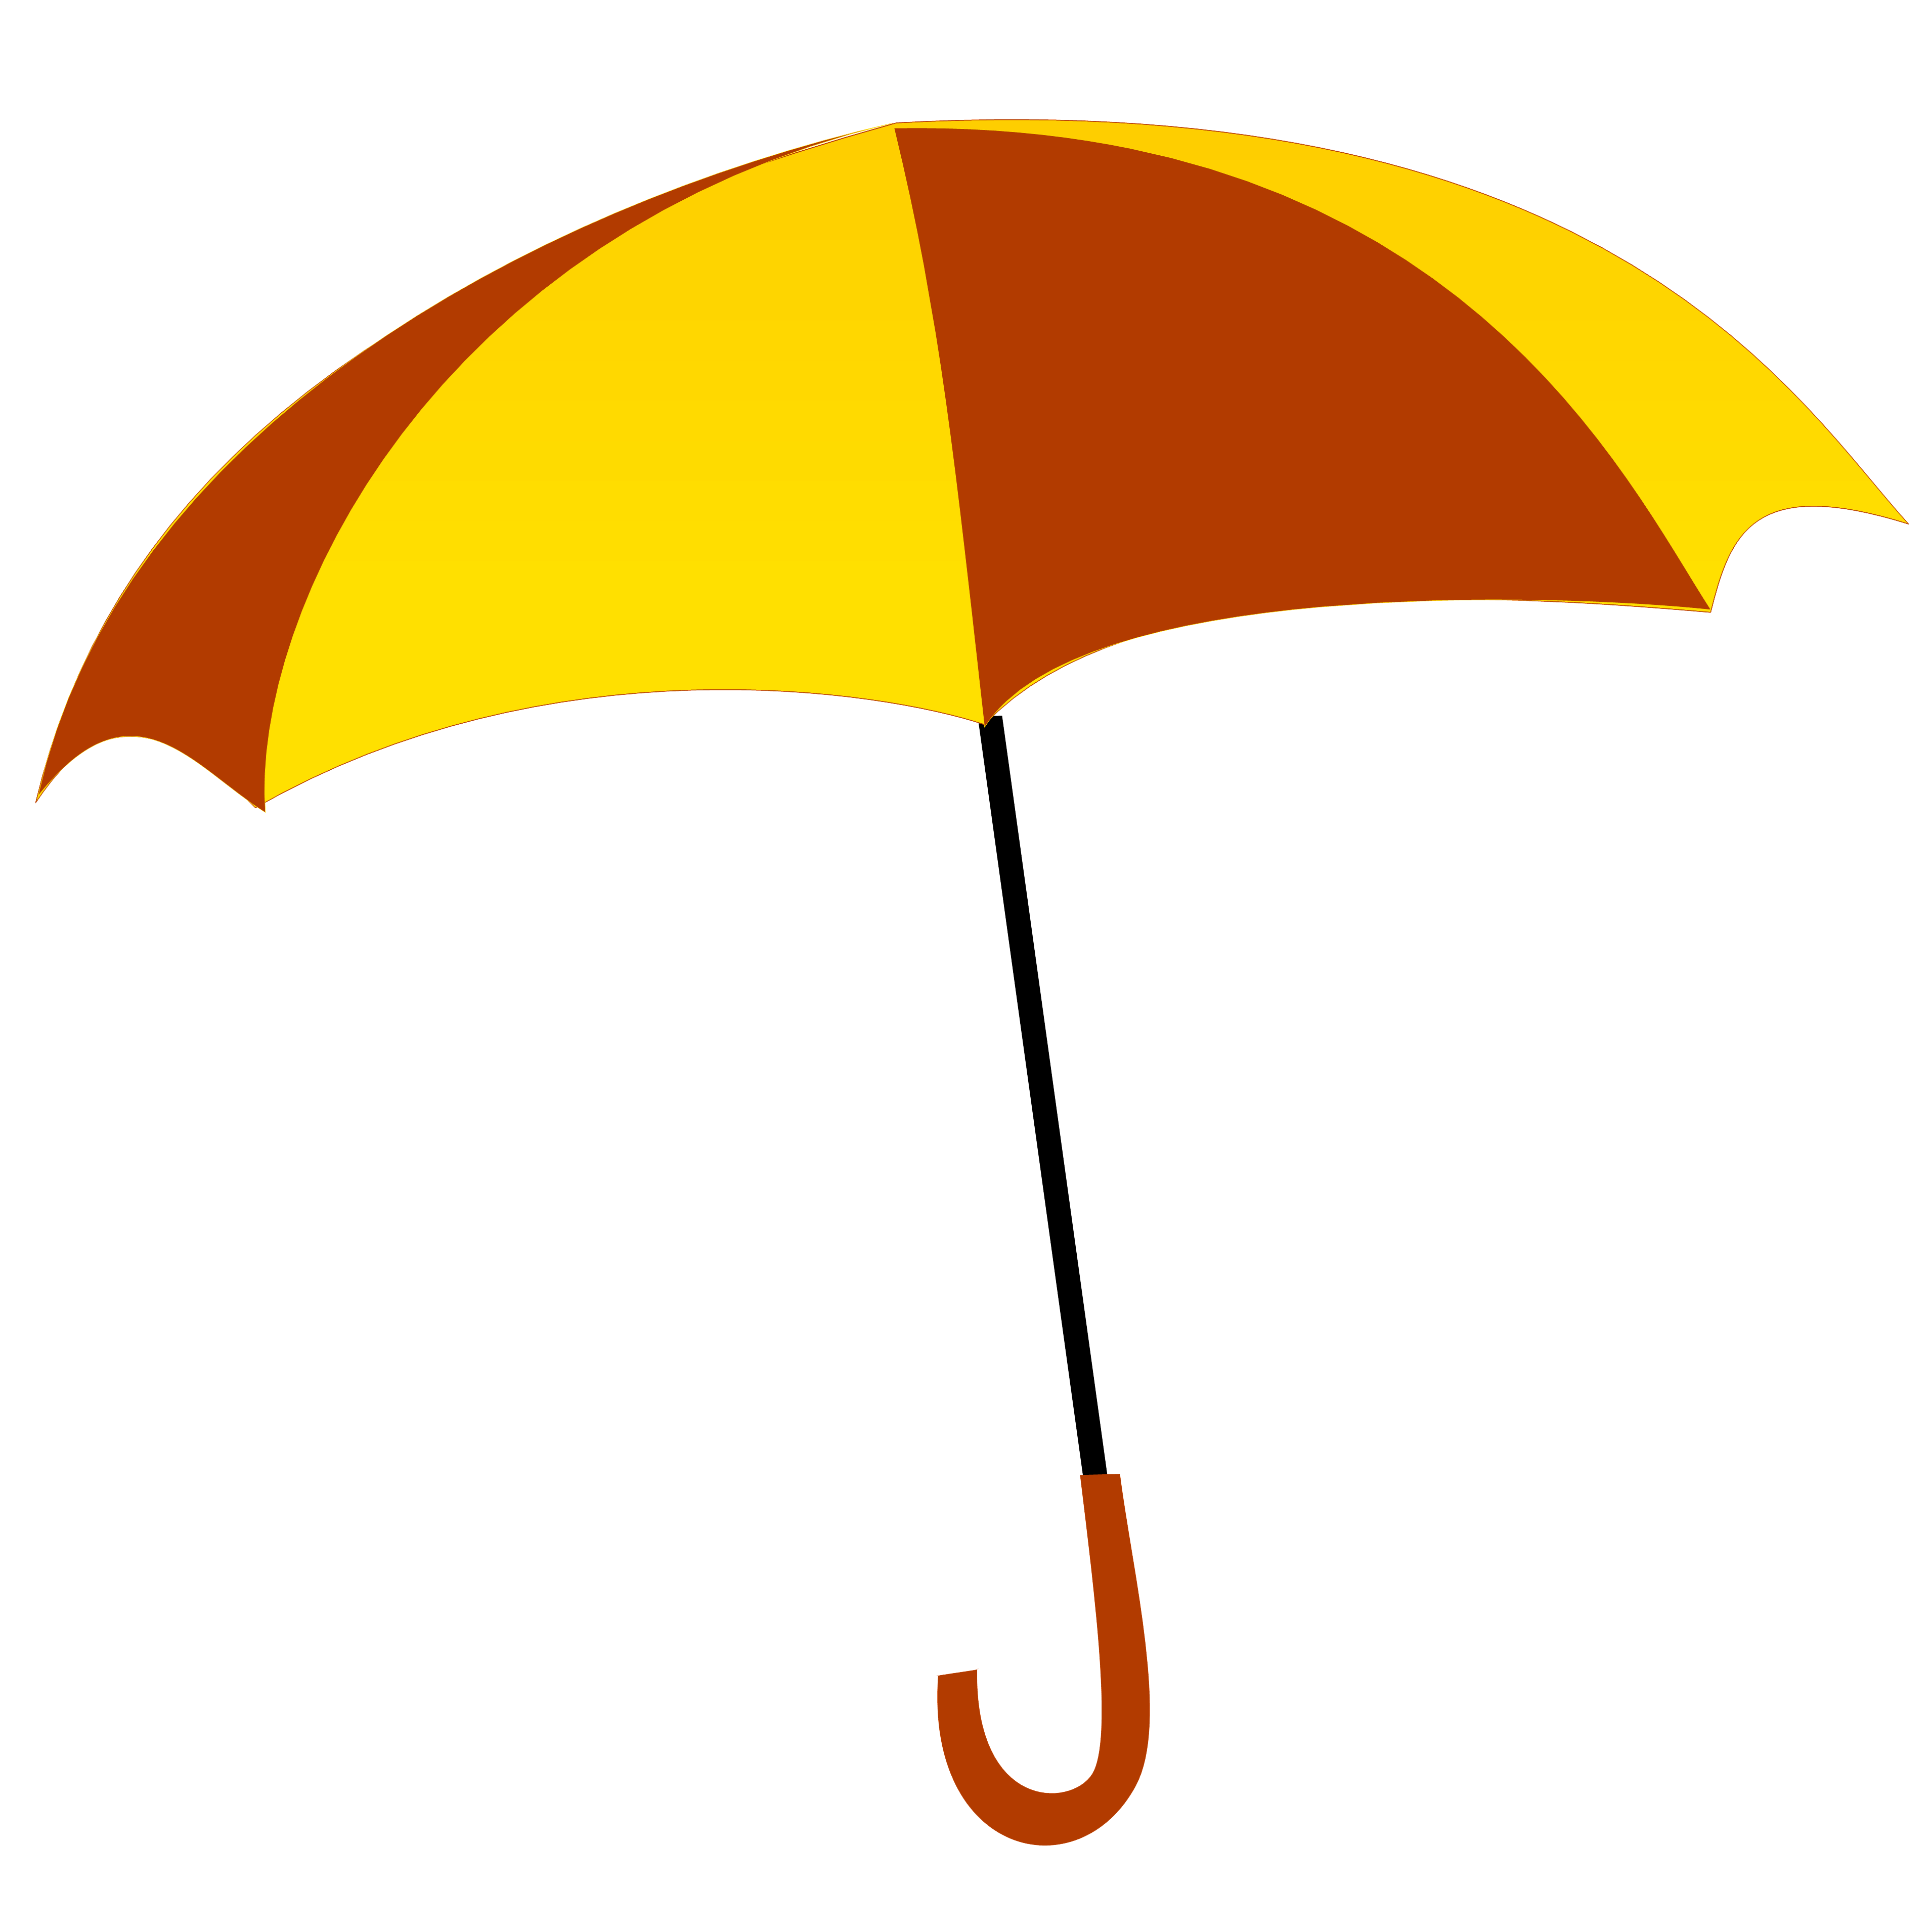 Hdpng - Umbrella, Transparent background PNG HD thumbnail